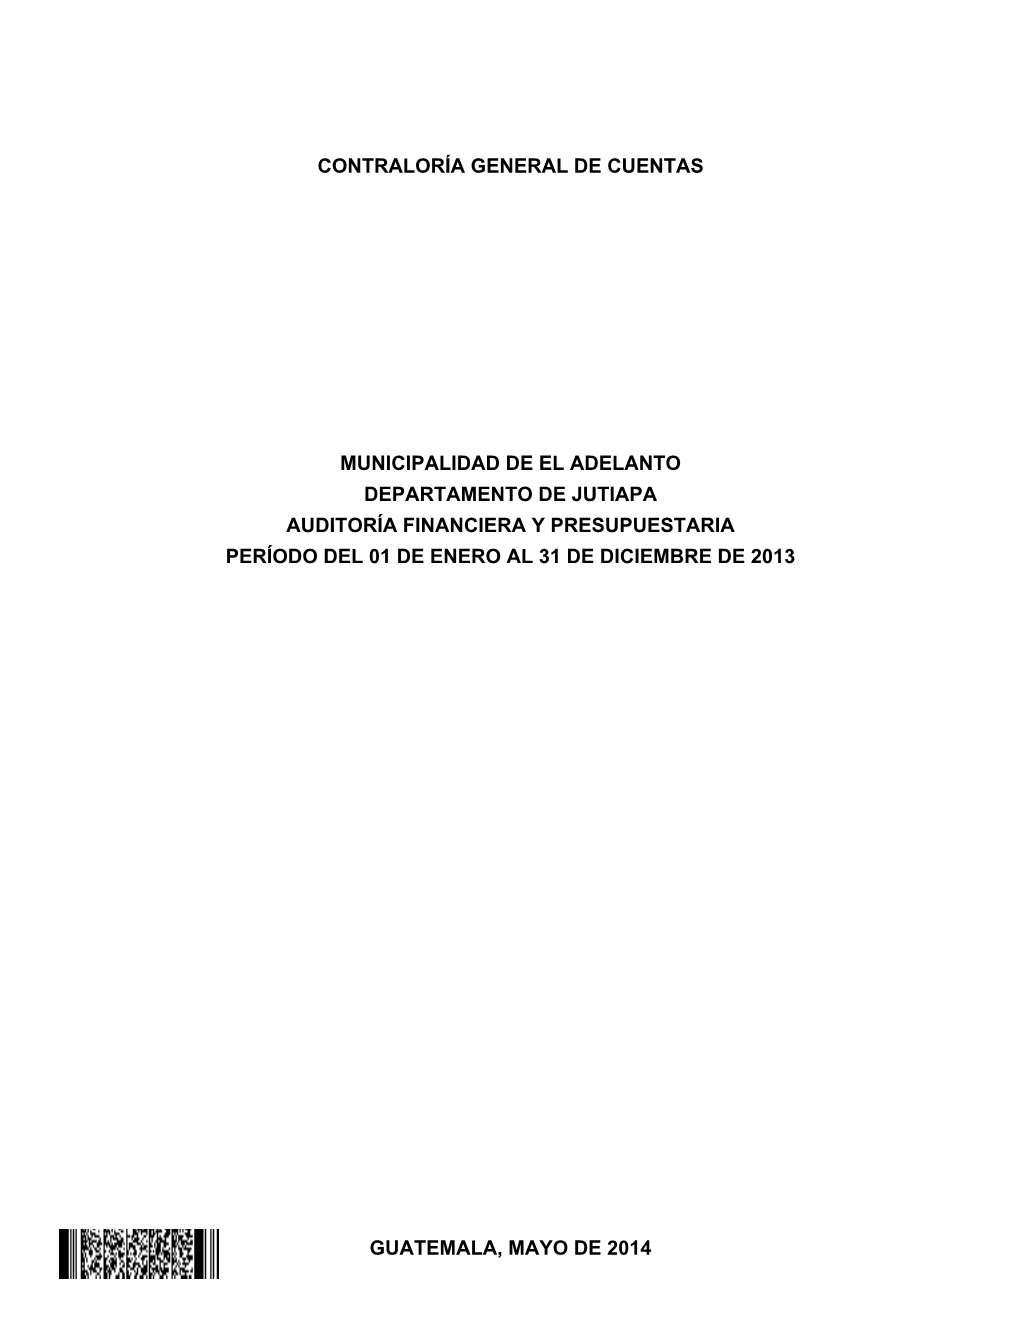 El Adelanto Departamento De Jutiapa Auditoría Financiera Y Presupuestaria Período Del 01 De Enero Al 31 De Diciembre De 2013